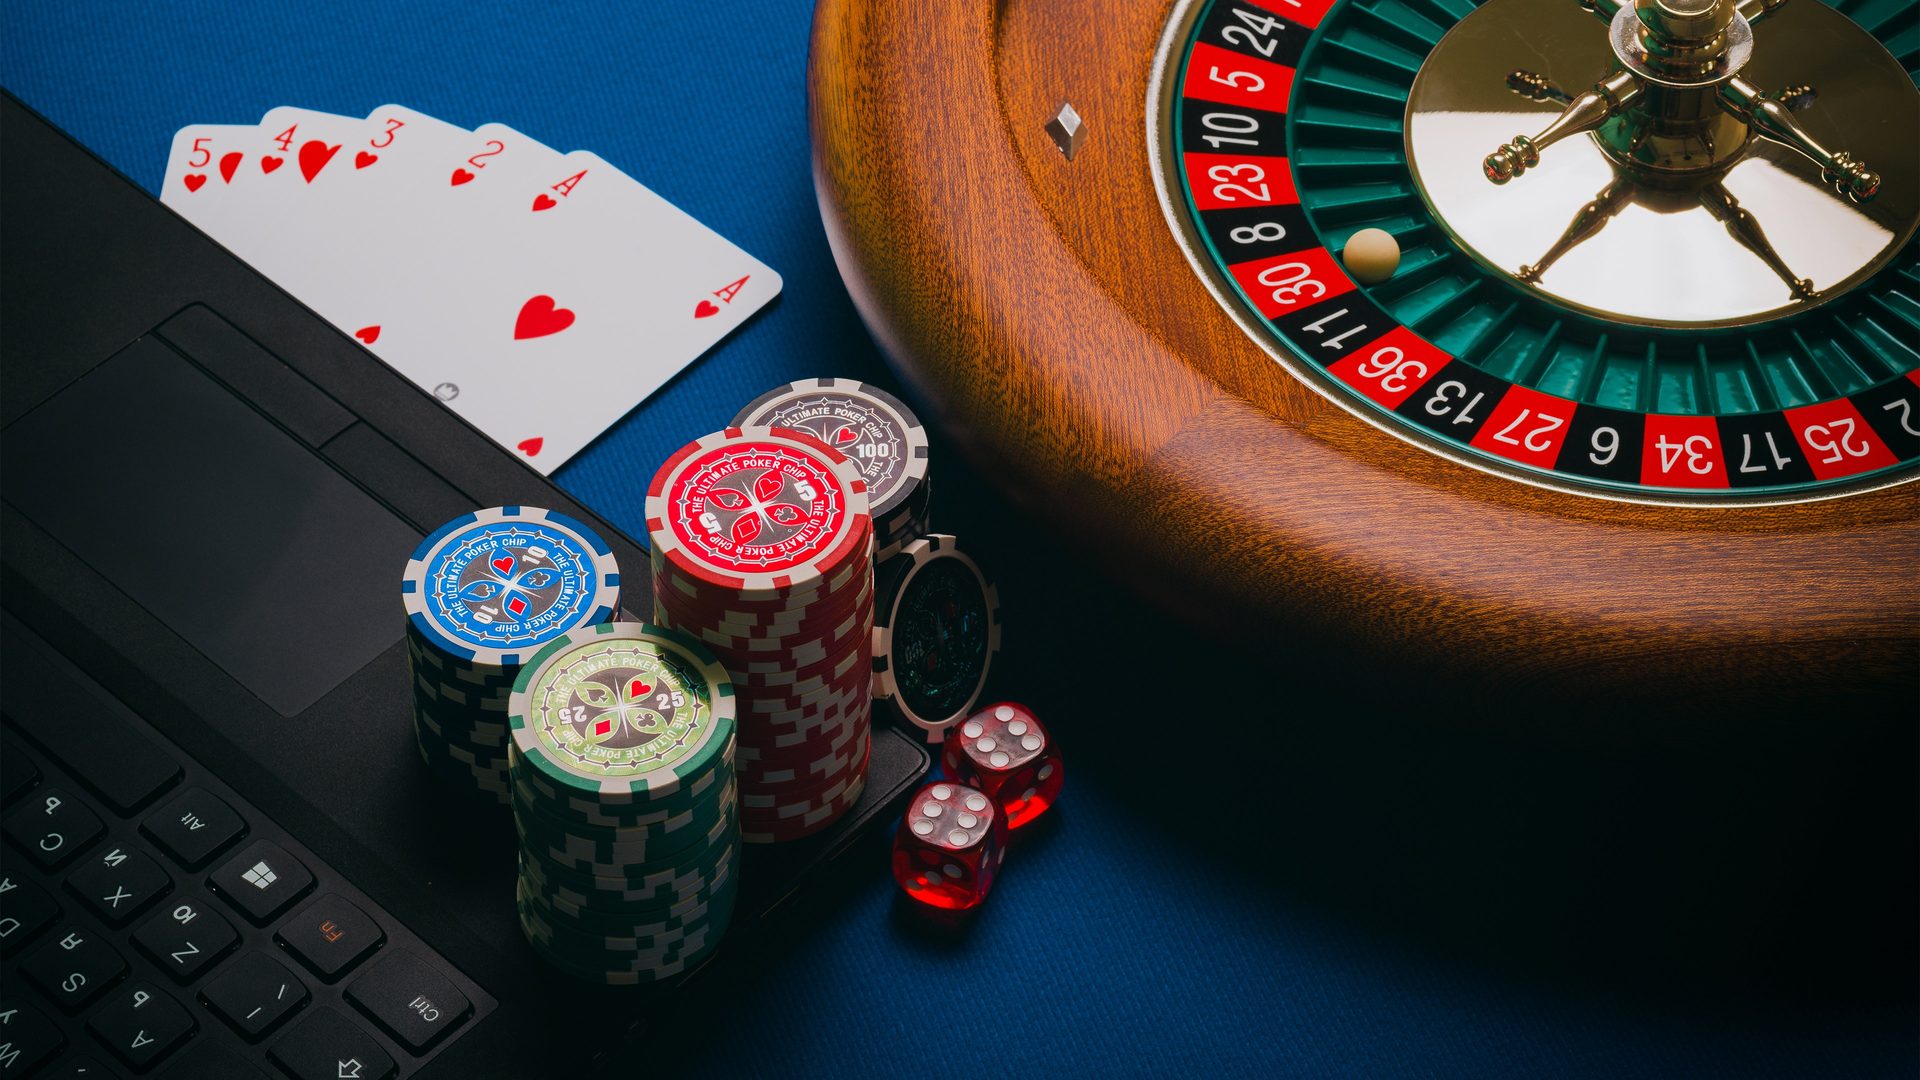 Technologia za kulisami kasyn online: Jak działają gry losowe?